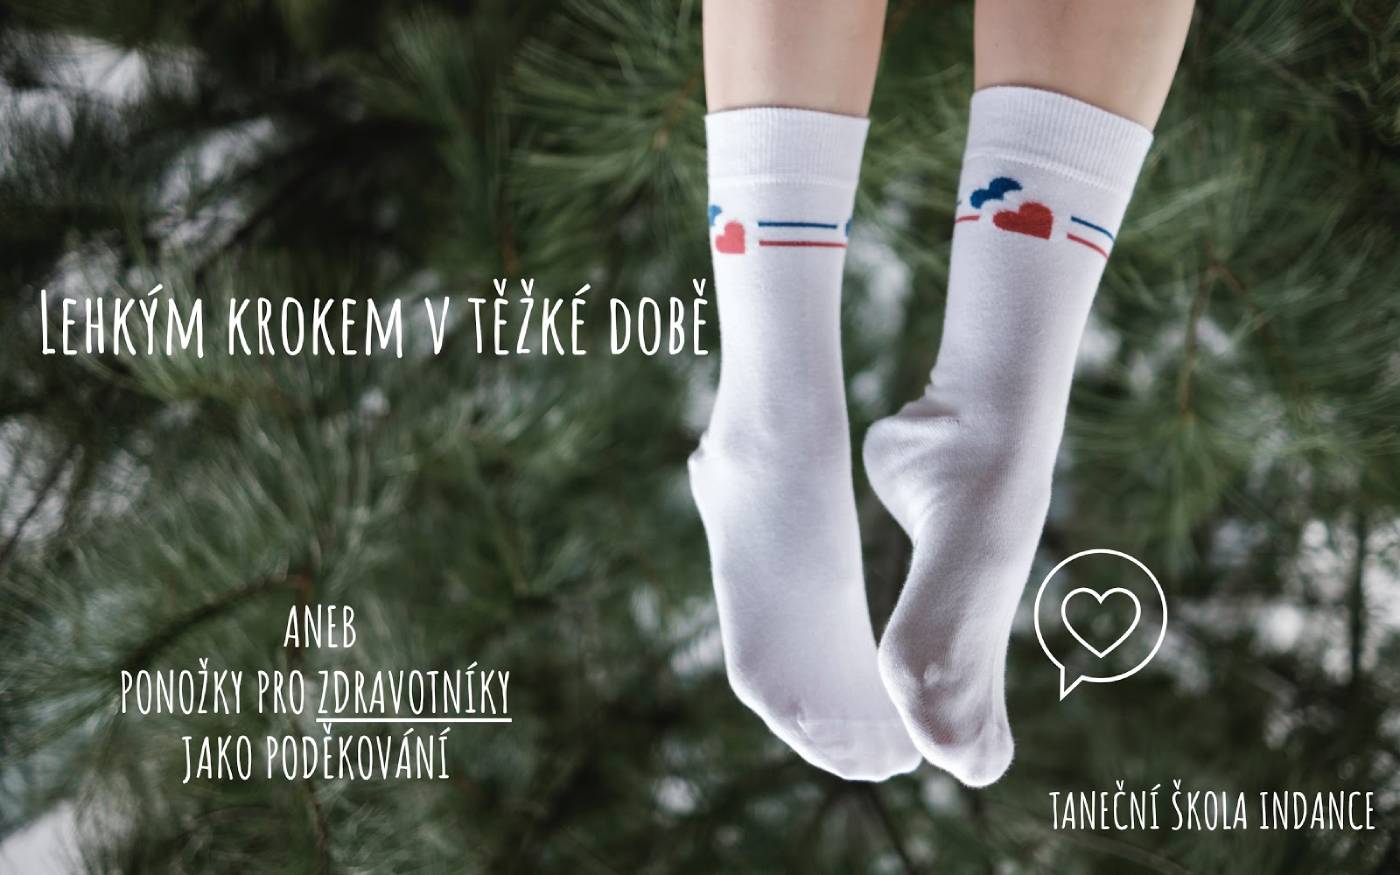 Ponožky pro zdravotníky - Lehkým krokem v těžké době